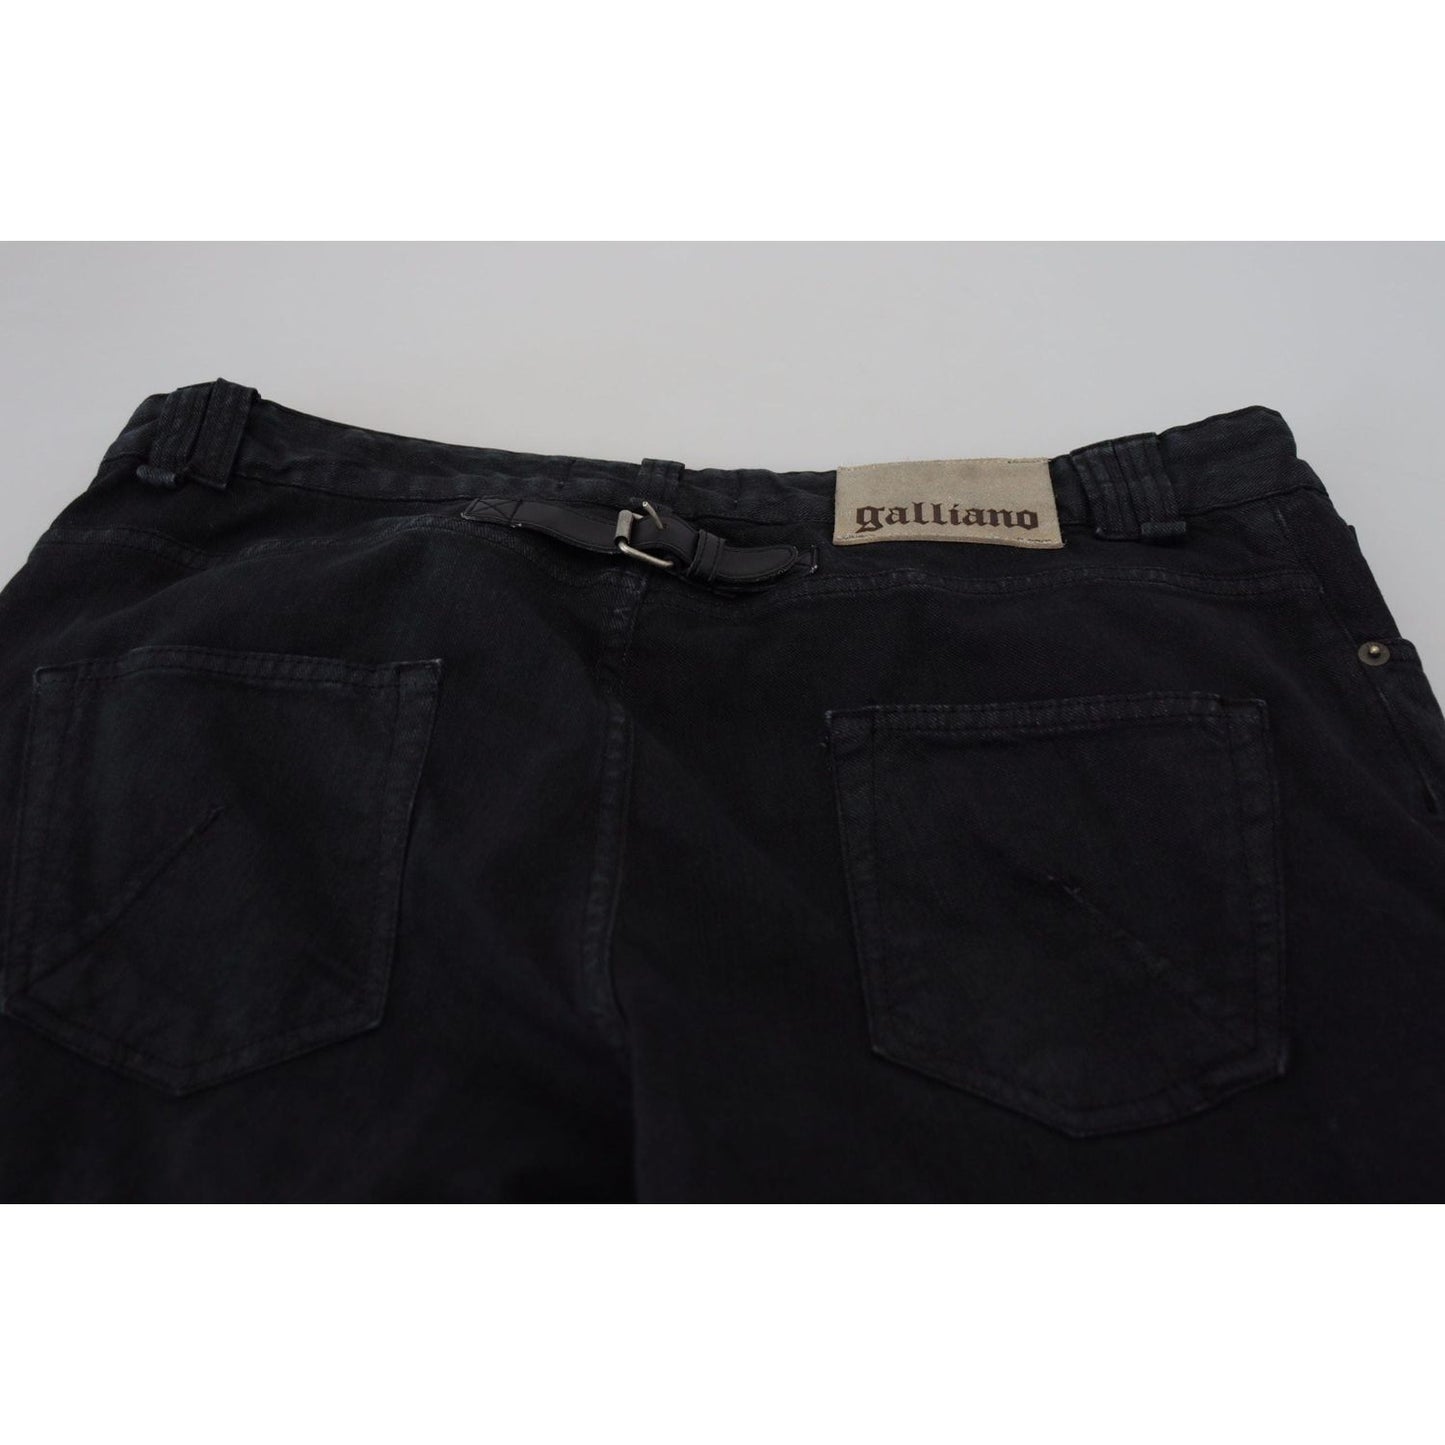 John Galliano Elegant Black Mainline Cotton Jeans black-cotton-back-buckle-casual-denim-jeans